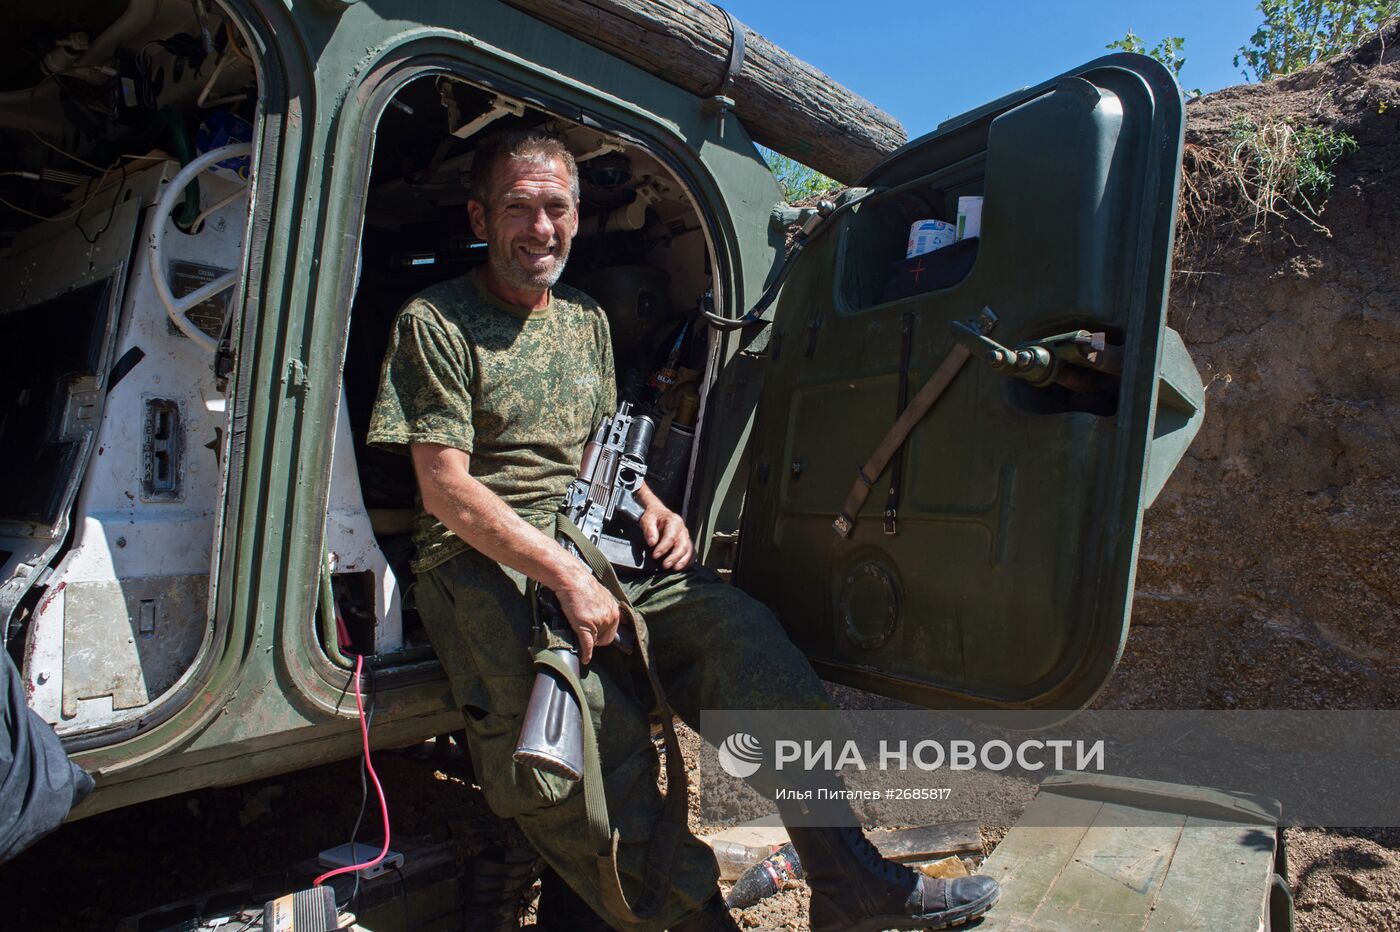 Бойцы батальона "Викинги" народного ополчения ДНР